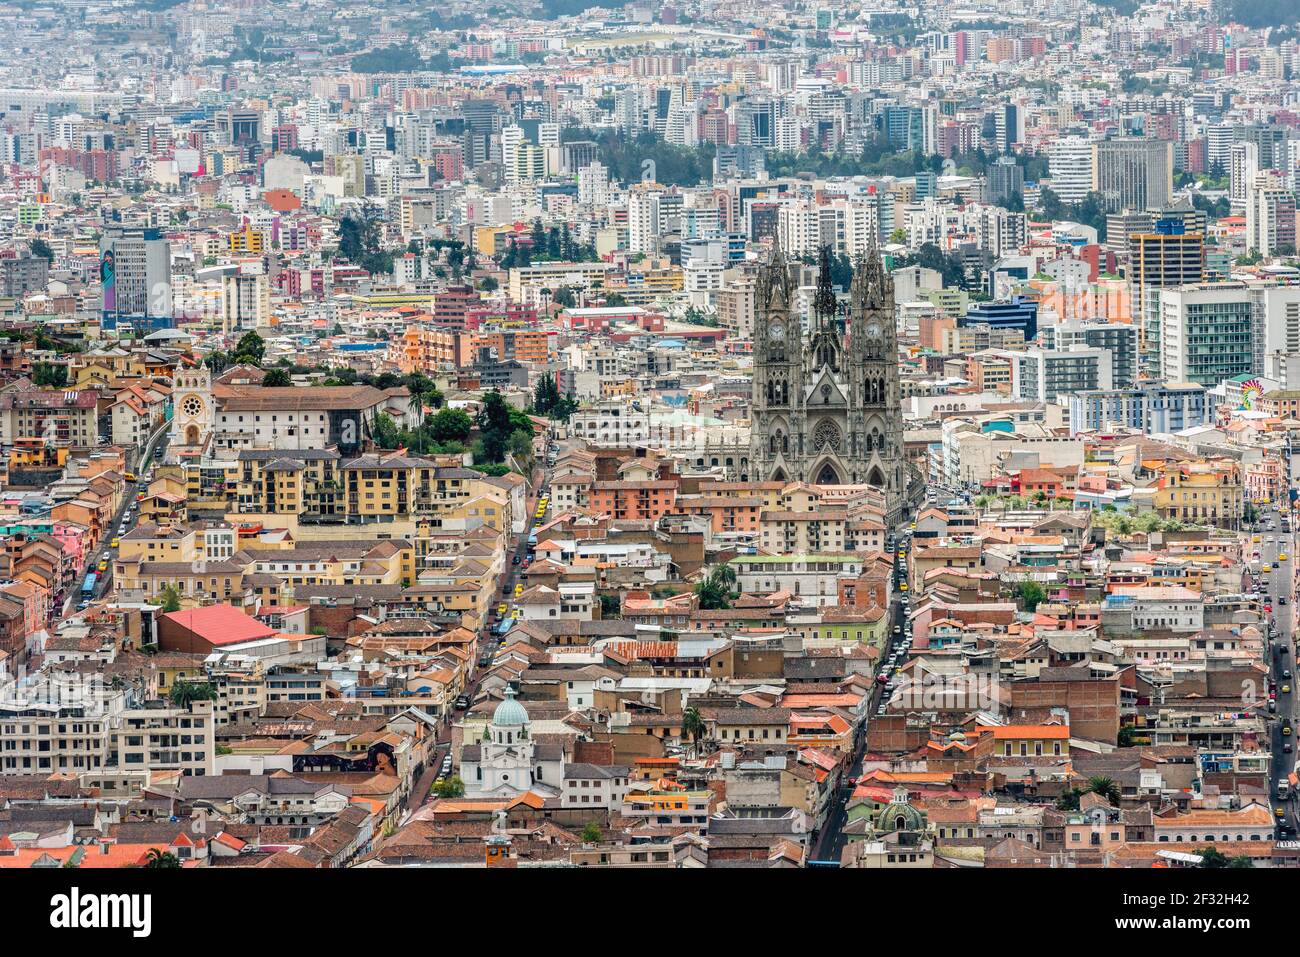 Vea el centro histórico de Quito lleno de iglesias antiguas, plazas y museos, catalogados como Patrimonio de la Humanidad por la UNESCO Foto de stock